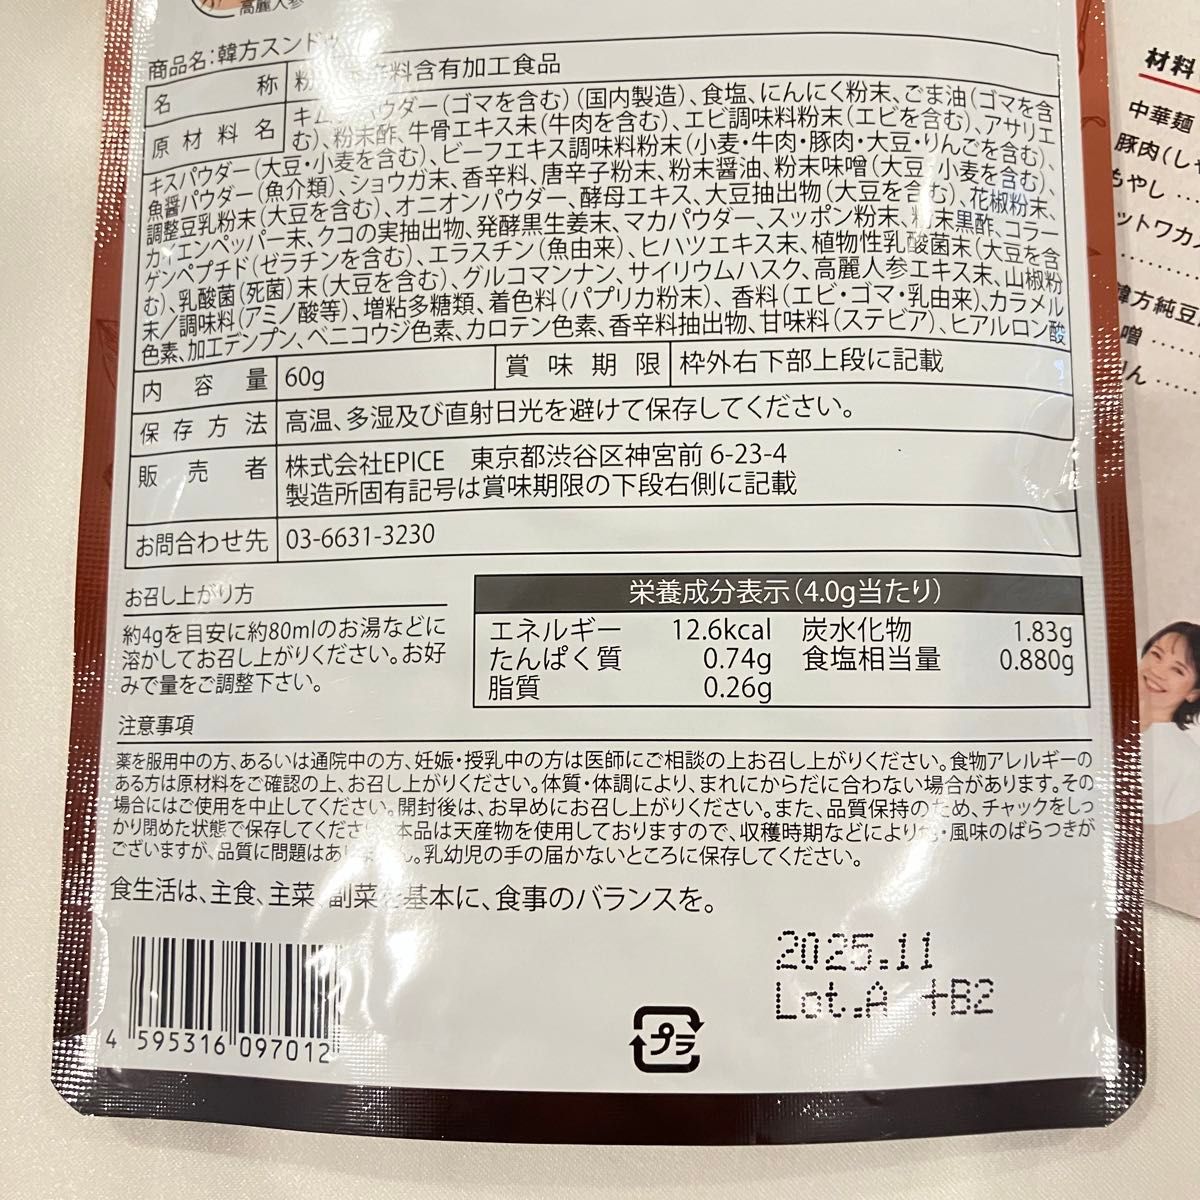 【 新品未開封 】韓方純豆腐 ハンバンスンドゥブ 60g ×1袋